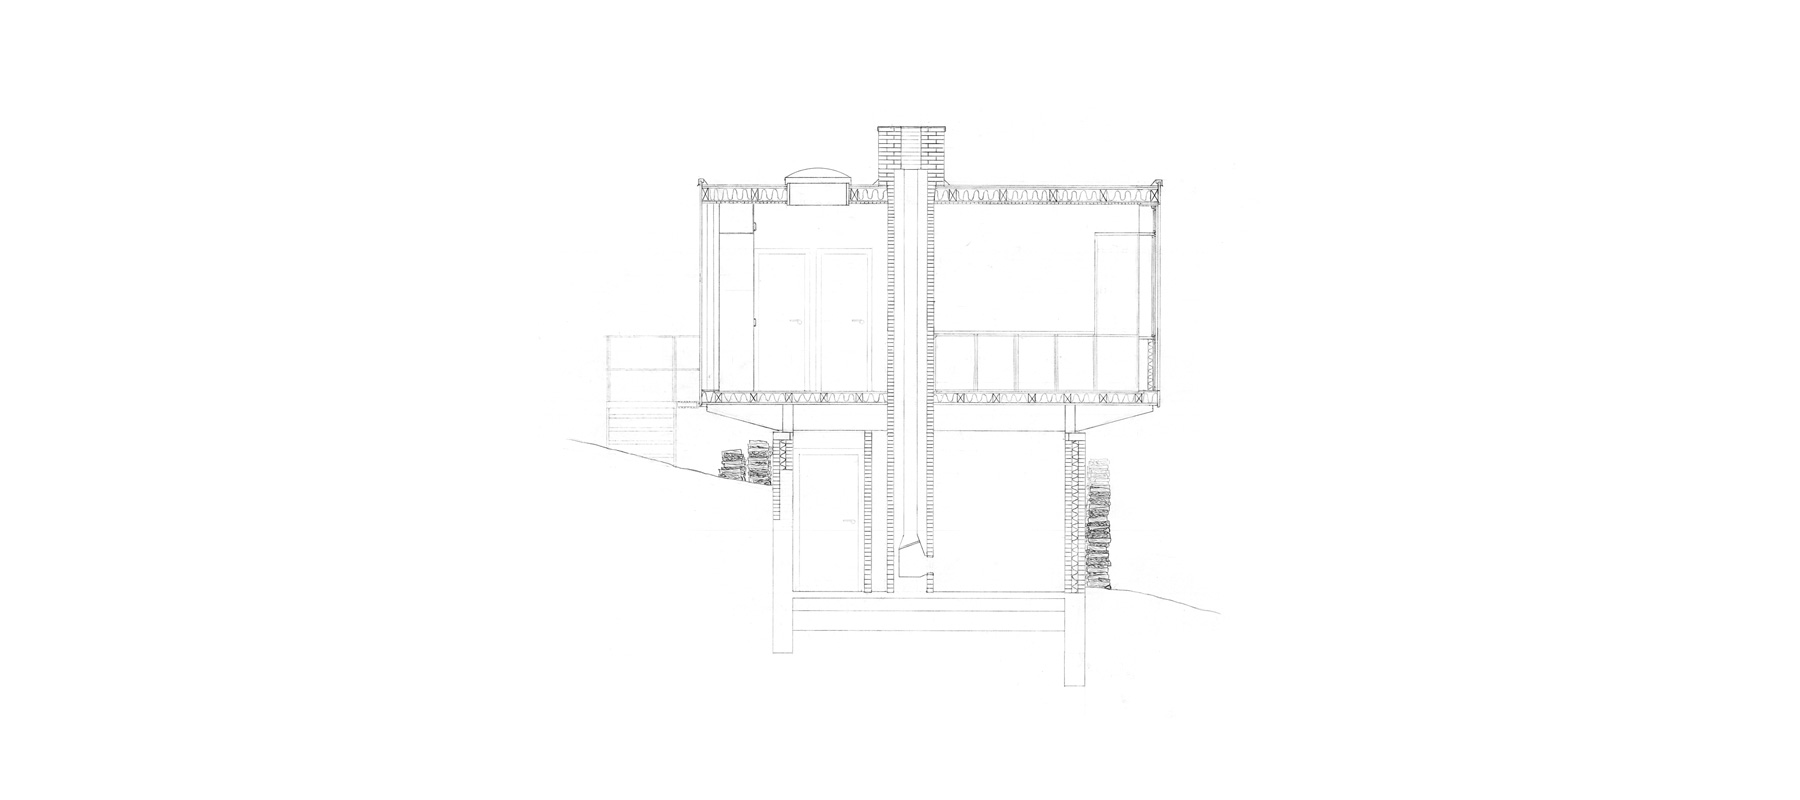 skoleprojekt skole projekt arkitekt arkitektskole aarhus studie analyse siesbys hus arne jacobsen dansk modernisme mursten beton træ